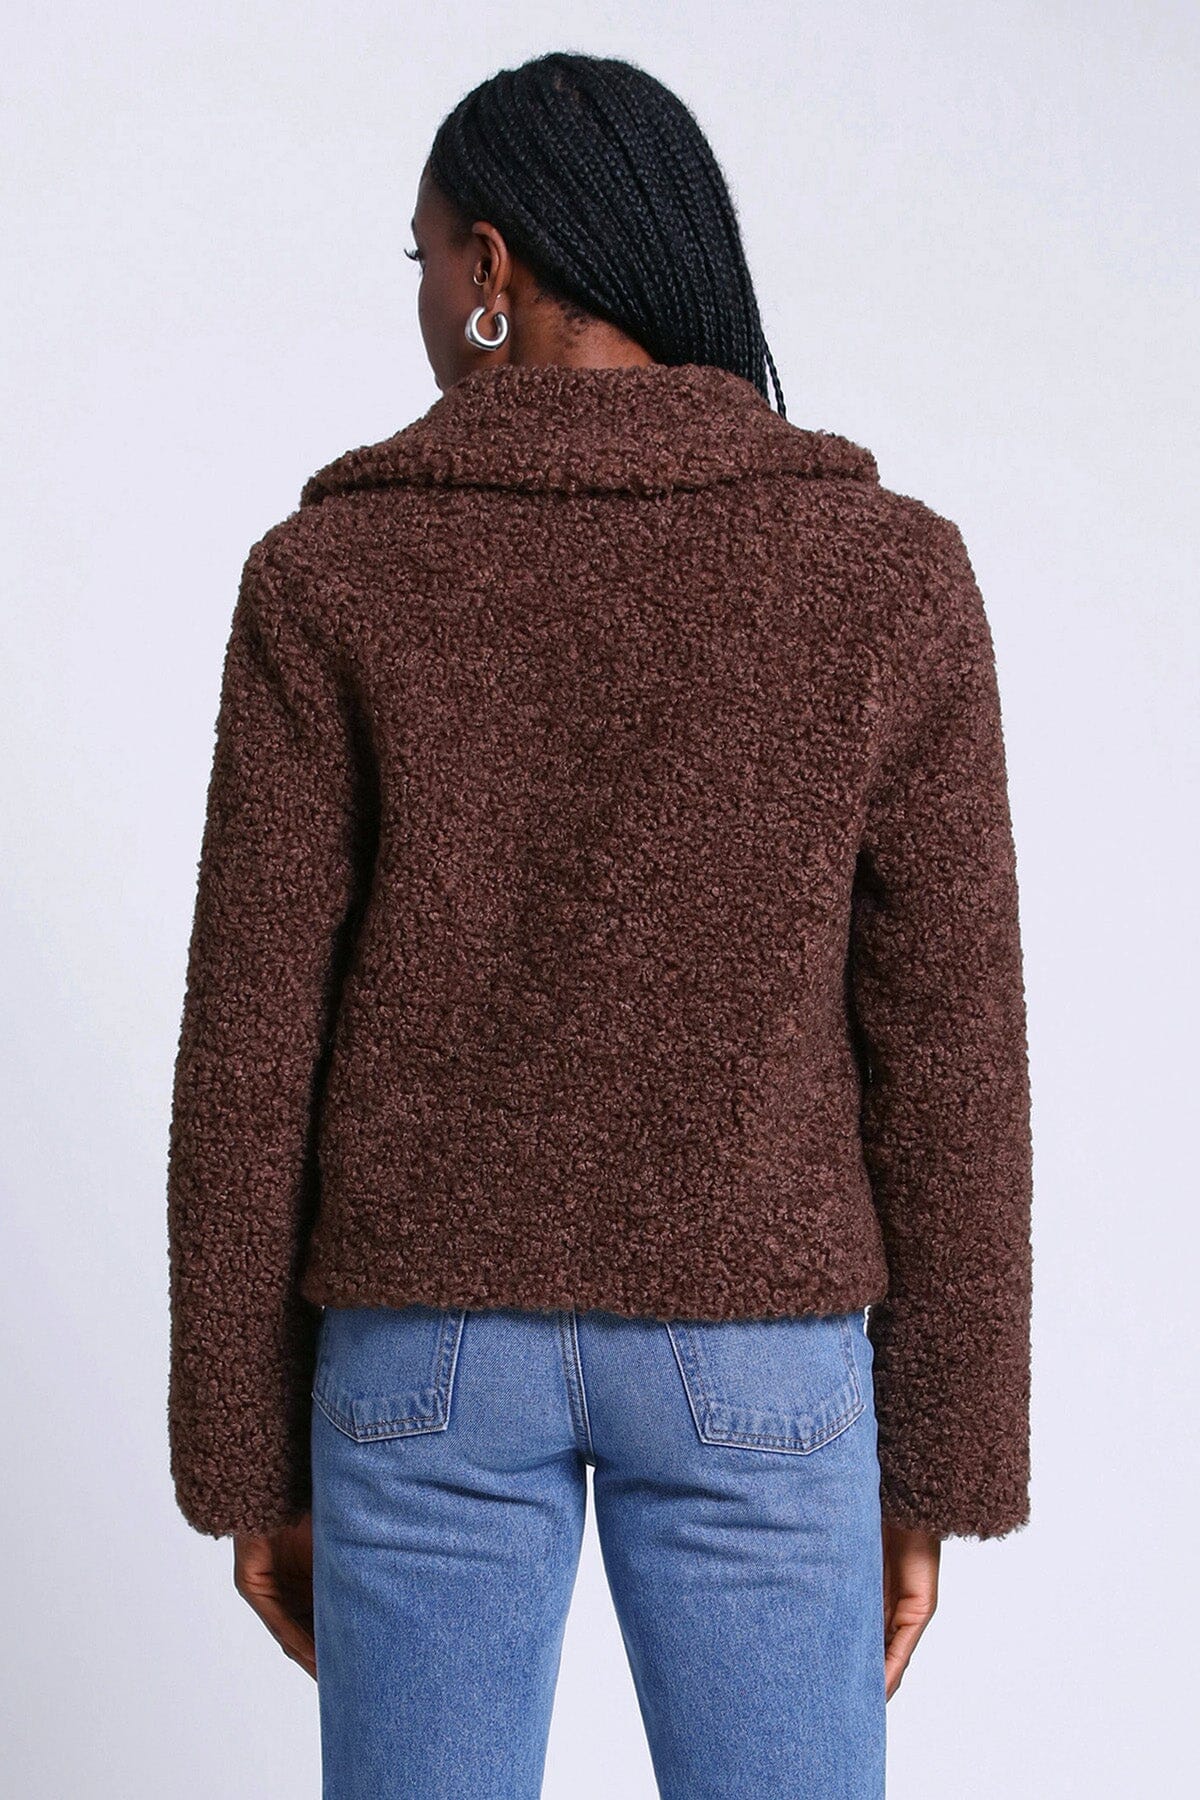 Brown teddy faux fur jacket coat figure flattering date night outerwear for women